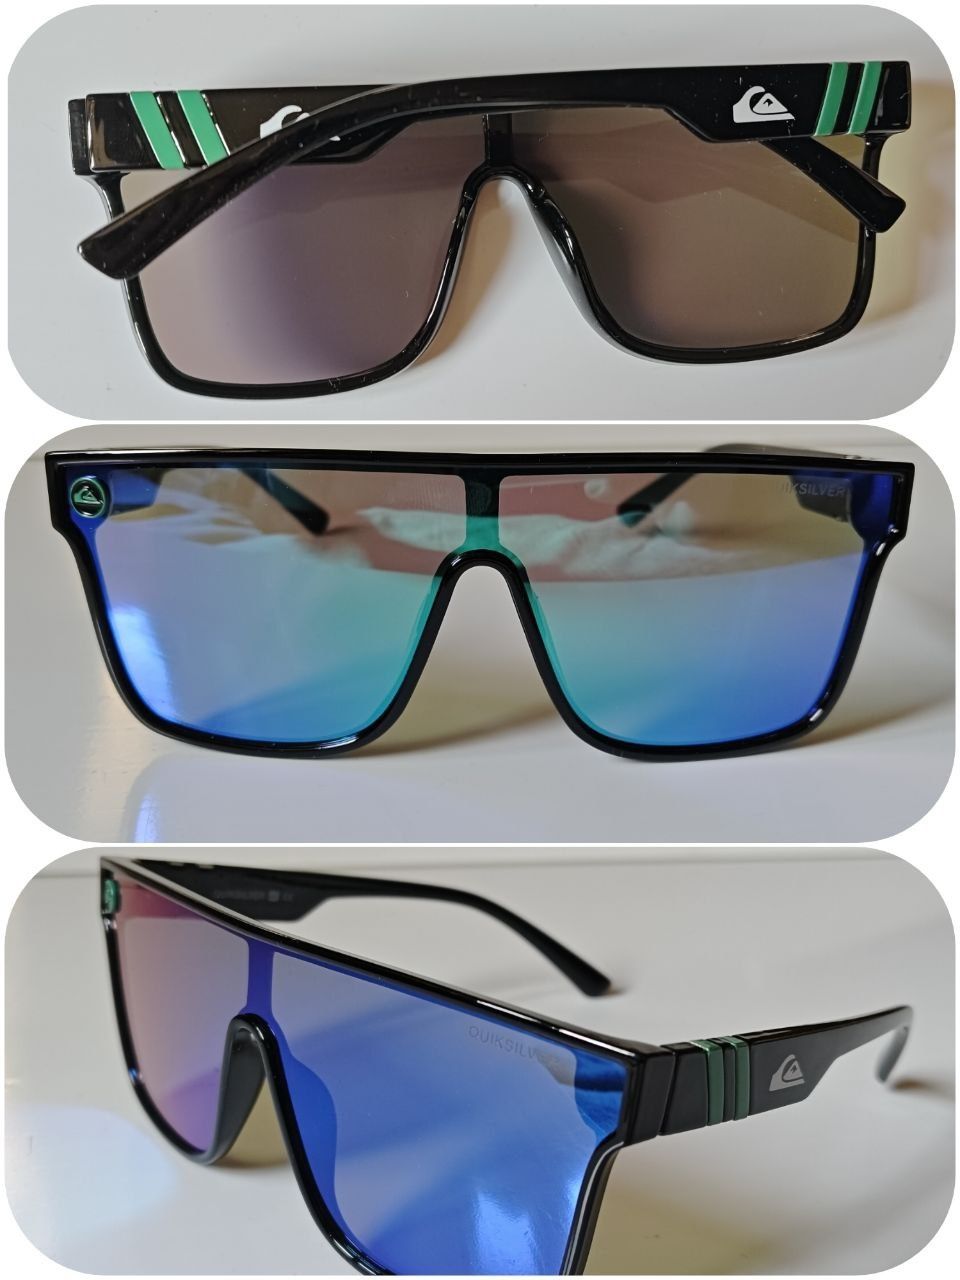 Quiksilver солнцезащитные очки для вело, мото, самокат